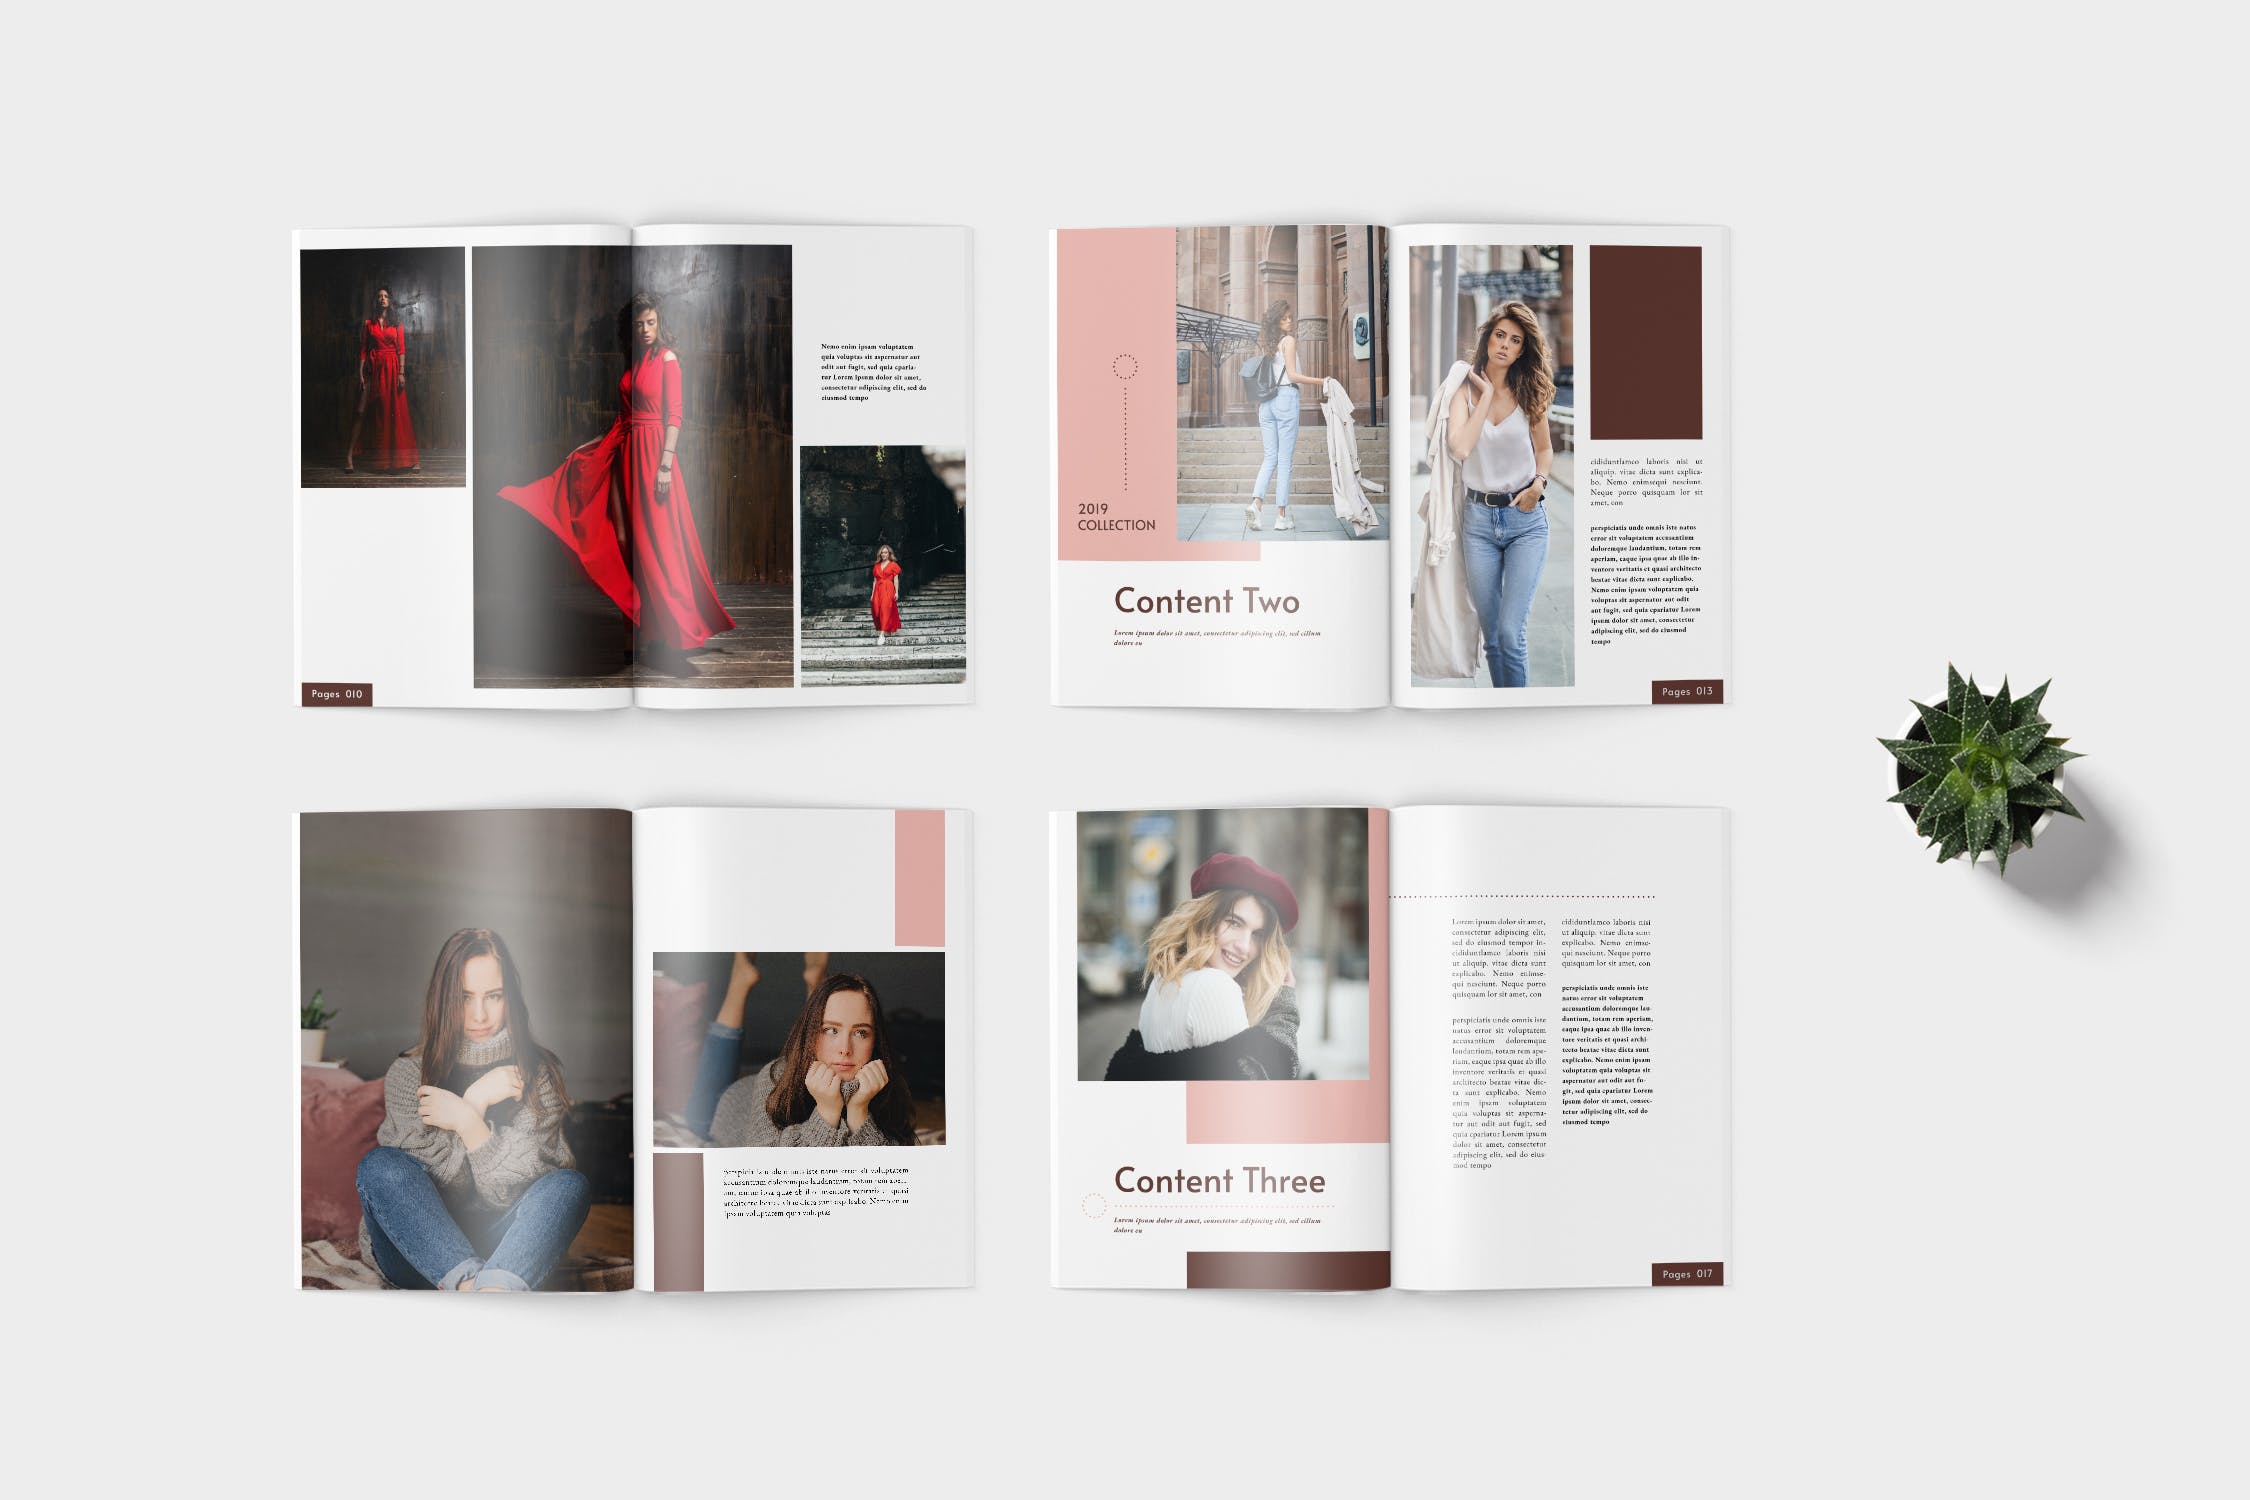 时装产品第一素材精选目录设计模板 Elana Fashion Lookbook Catalogue插图(3)